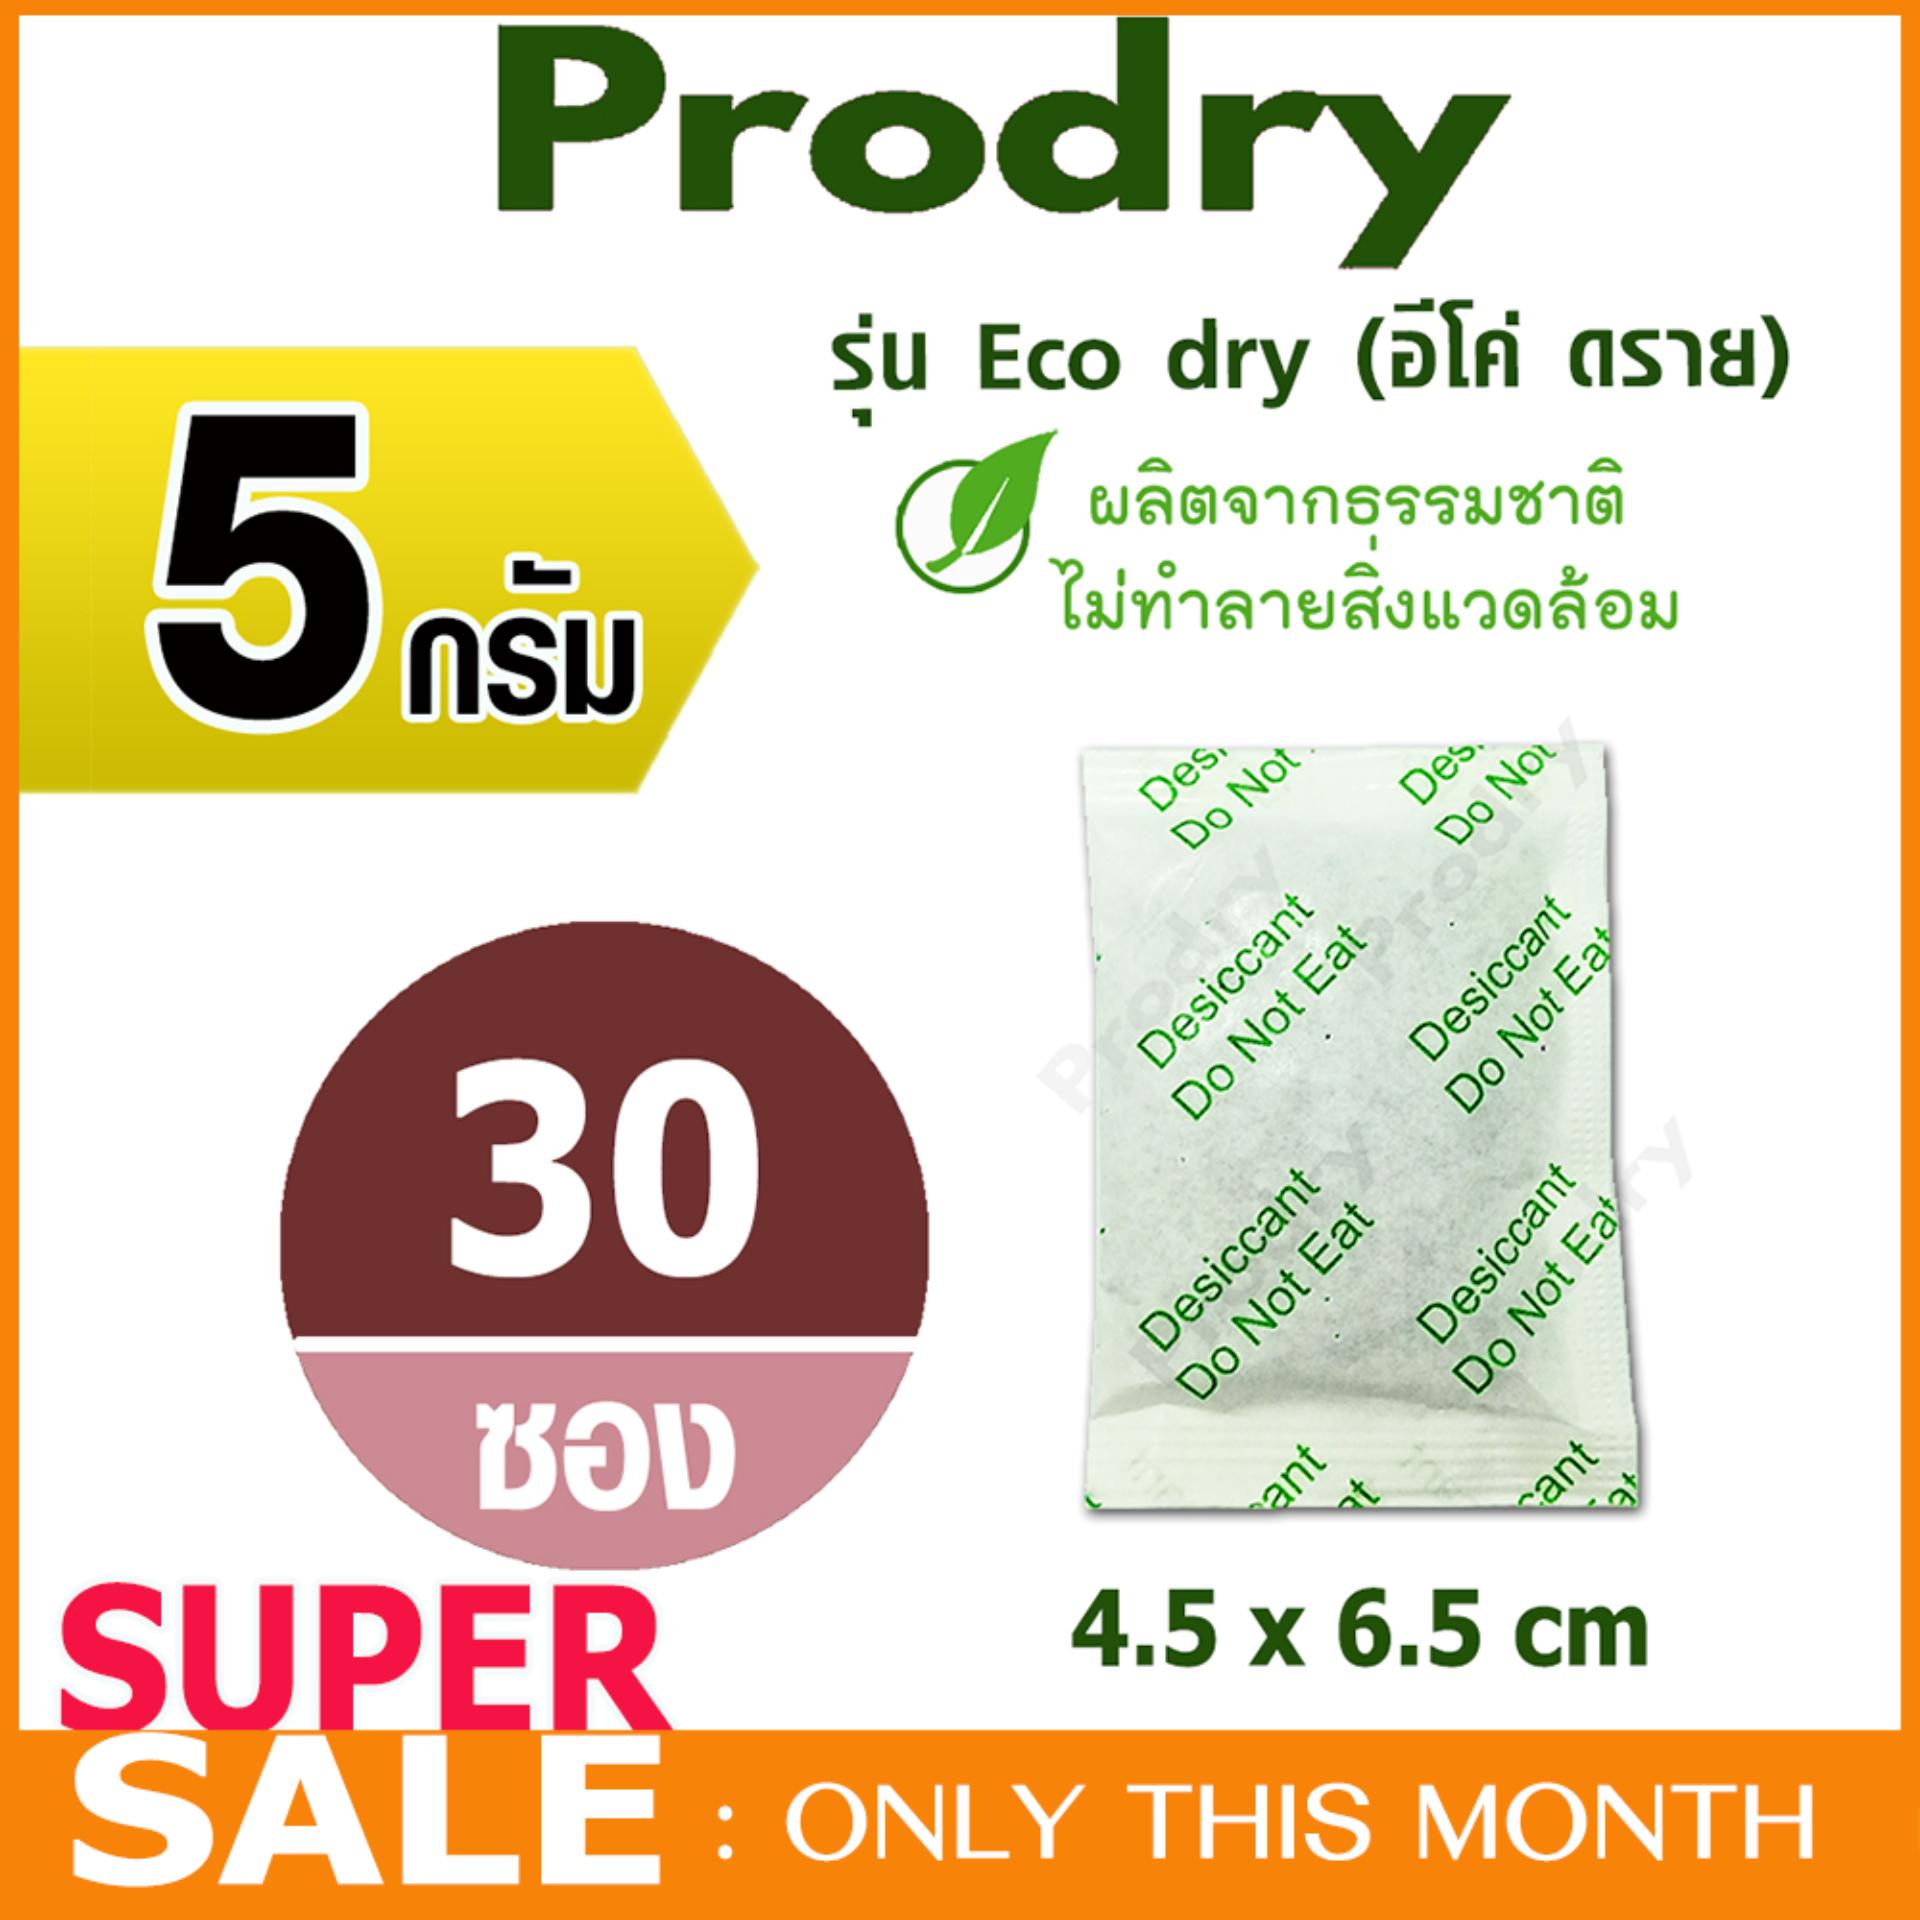 PRODRY ซองกันชื้น 5 กรัม (รุ่น Eco dry) 30 ซอง ผลิตจากธรรมชาติ (silica gel,desiccant ,สารกันความชื้น,ซิลิก้าเจล,เม็ดกันชื้น)